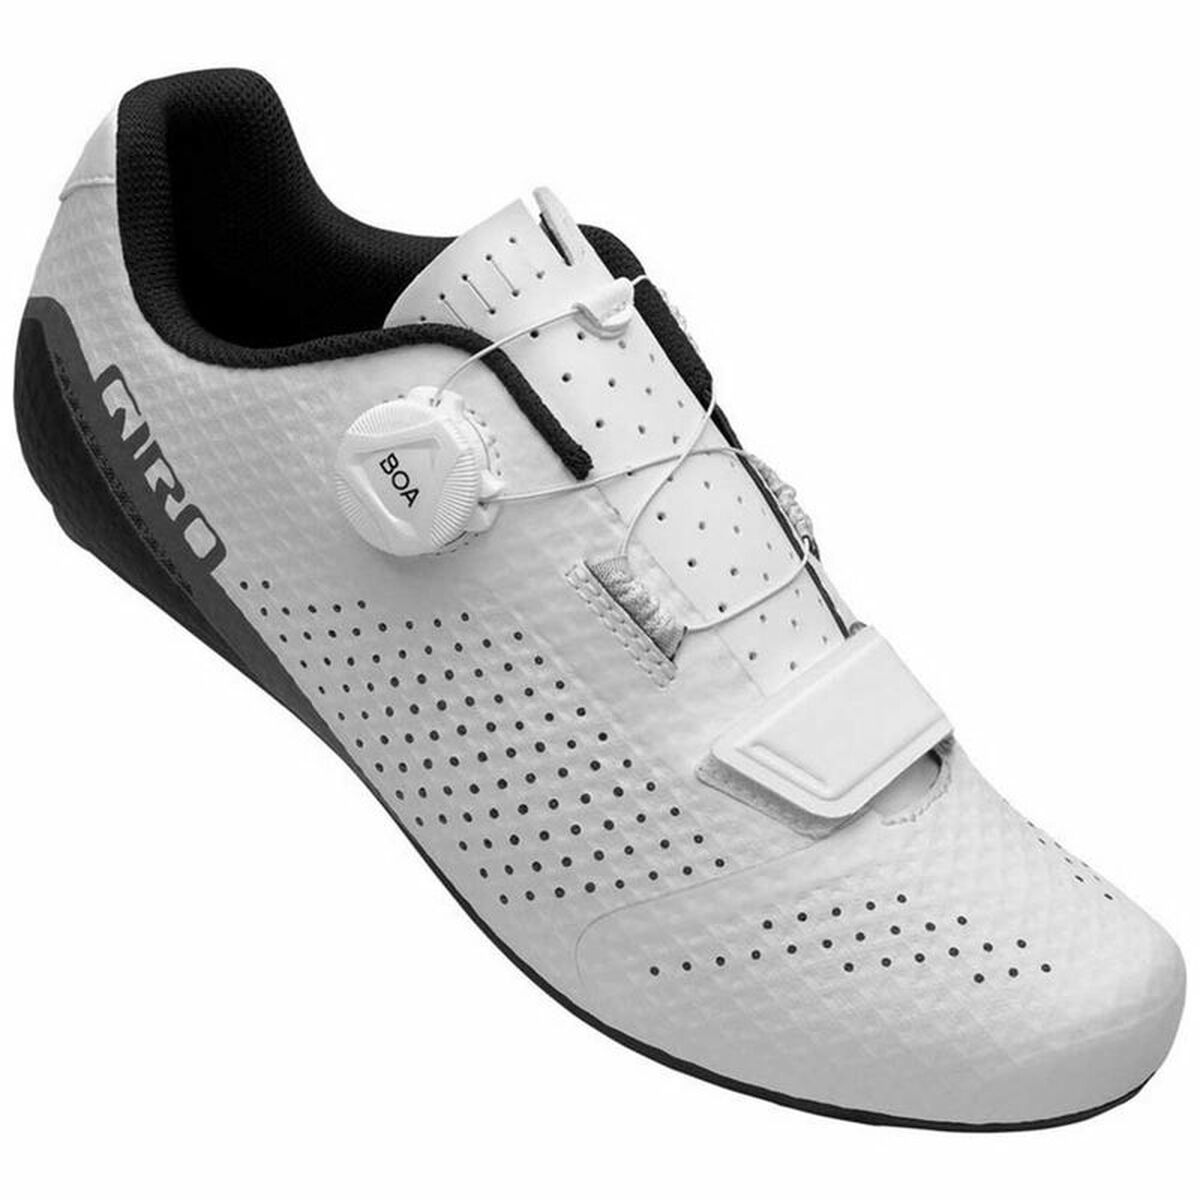 Radfahren Schuhe Giro Cadet Weiß